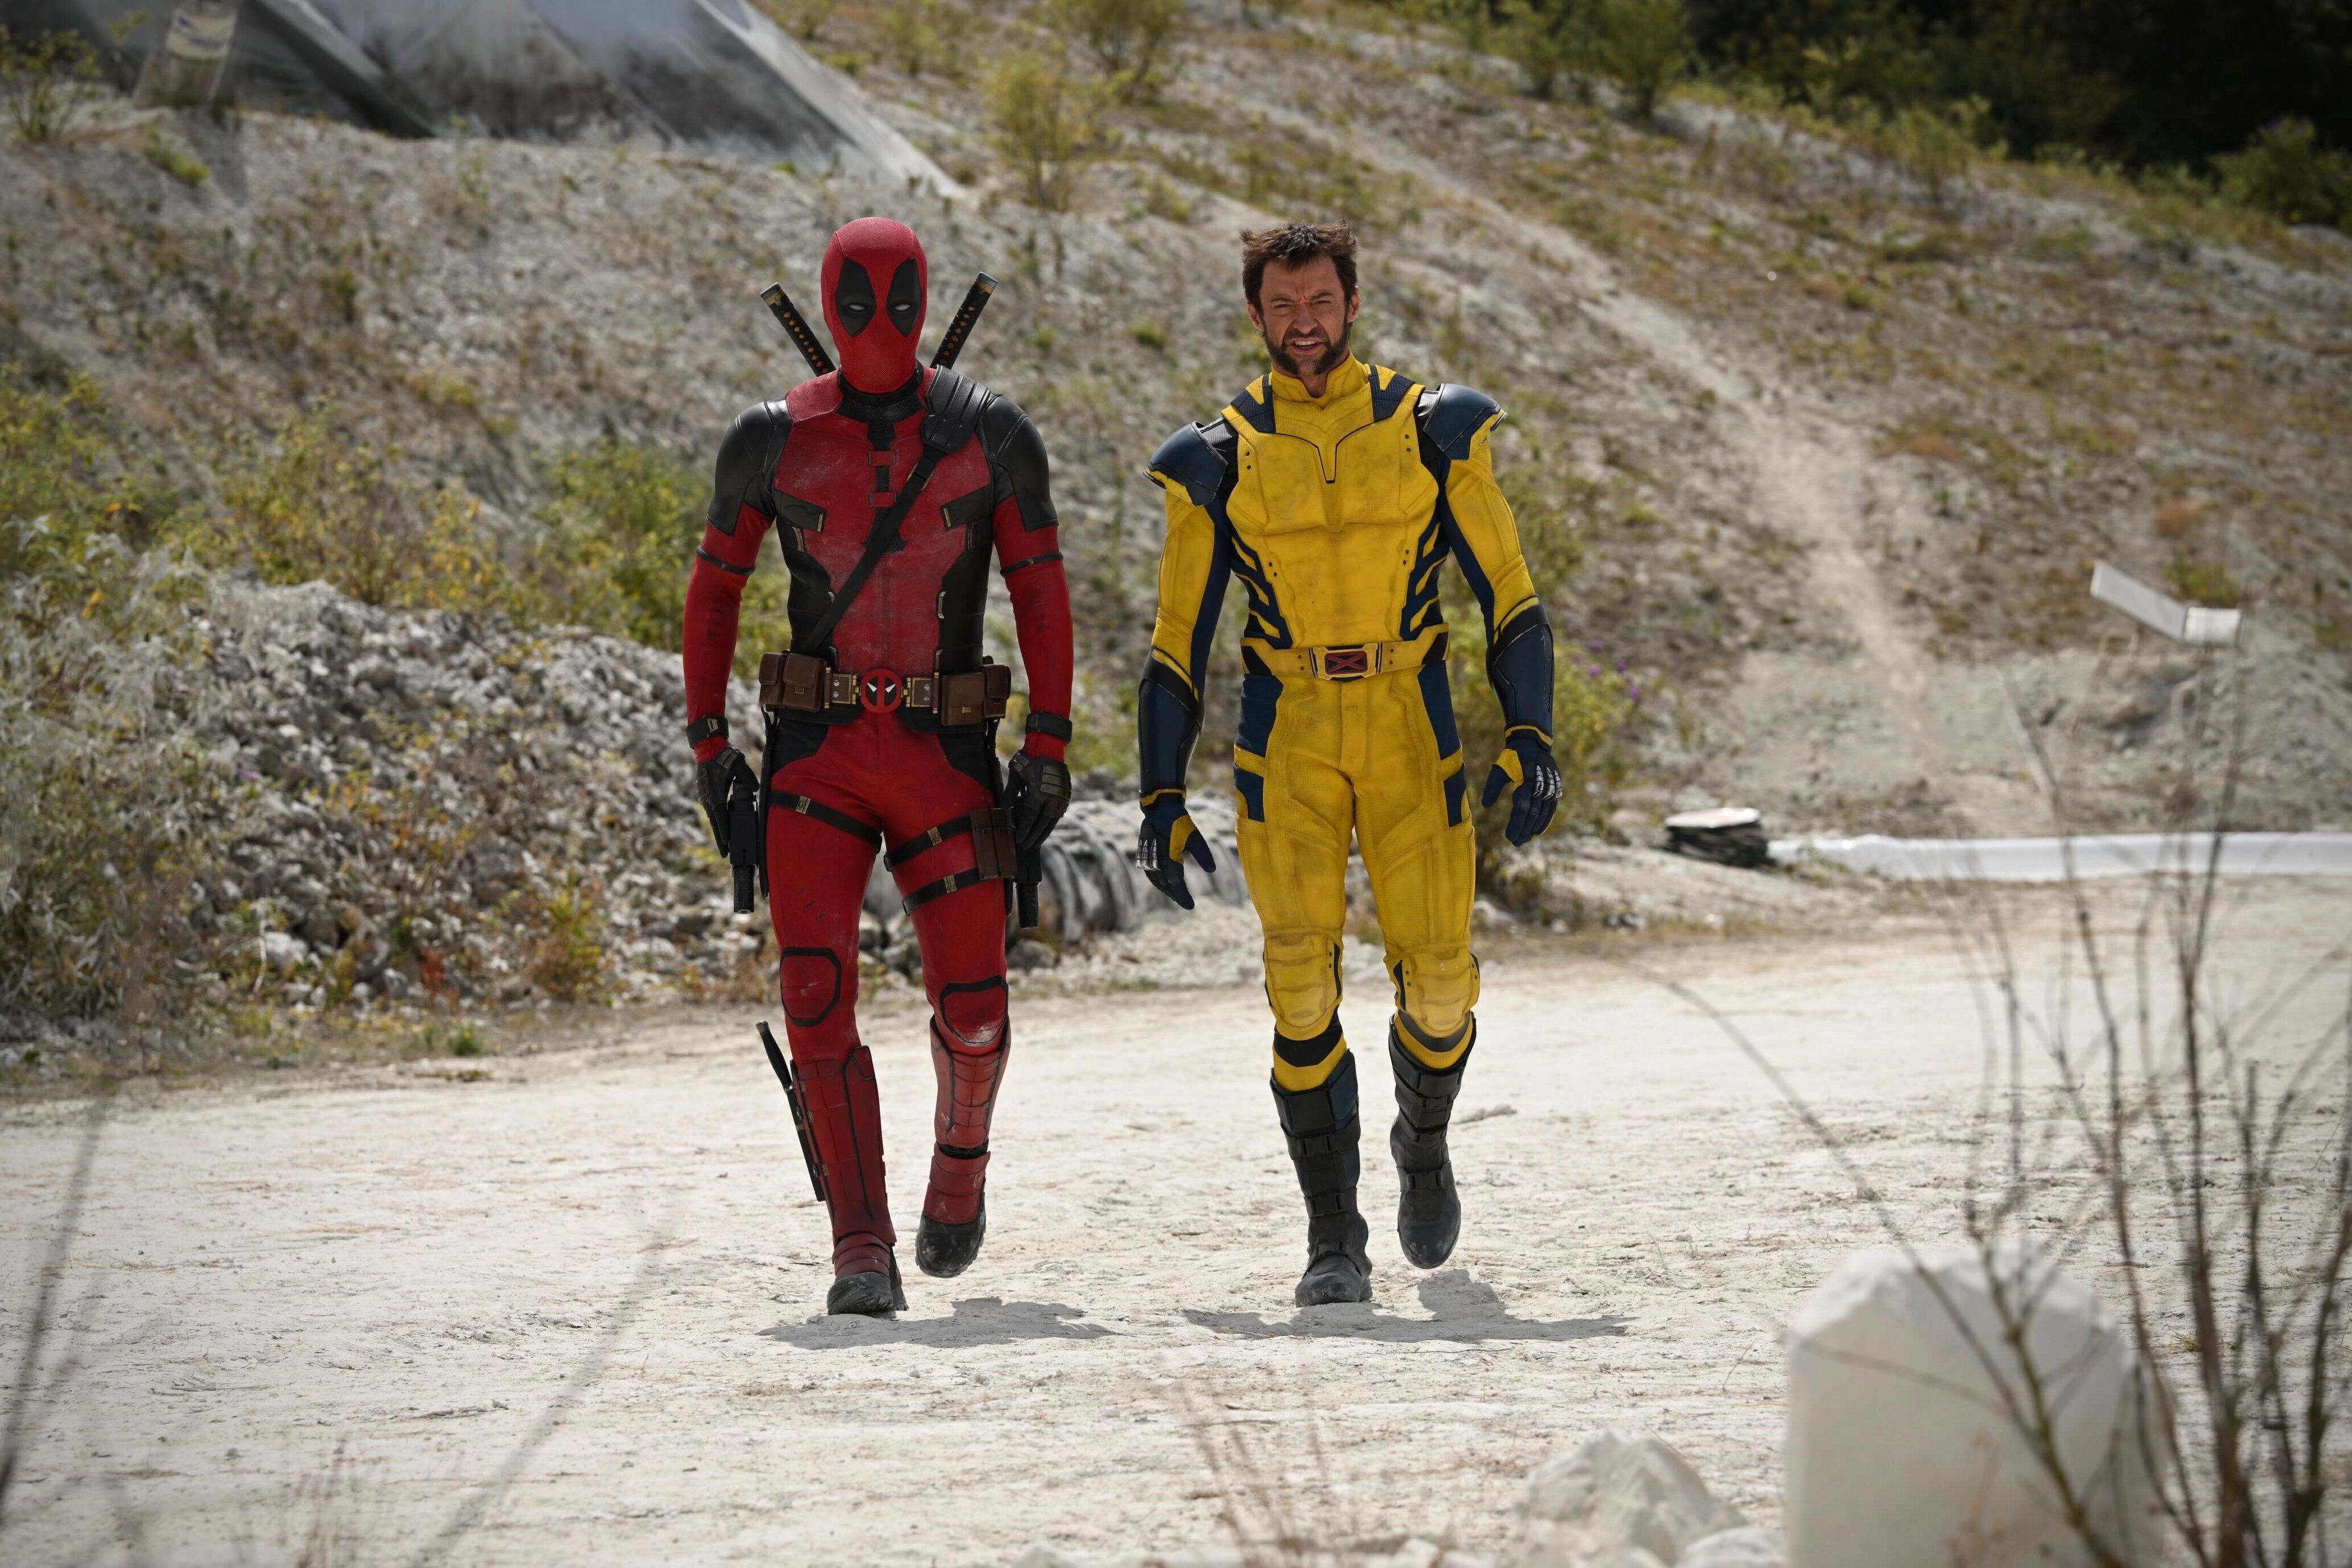 Lobezno usará el traje de los cómics en Deadpool 3: así luce Hugh Jackman  con el icónico look - Meristation